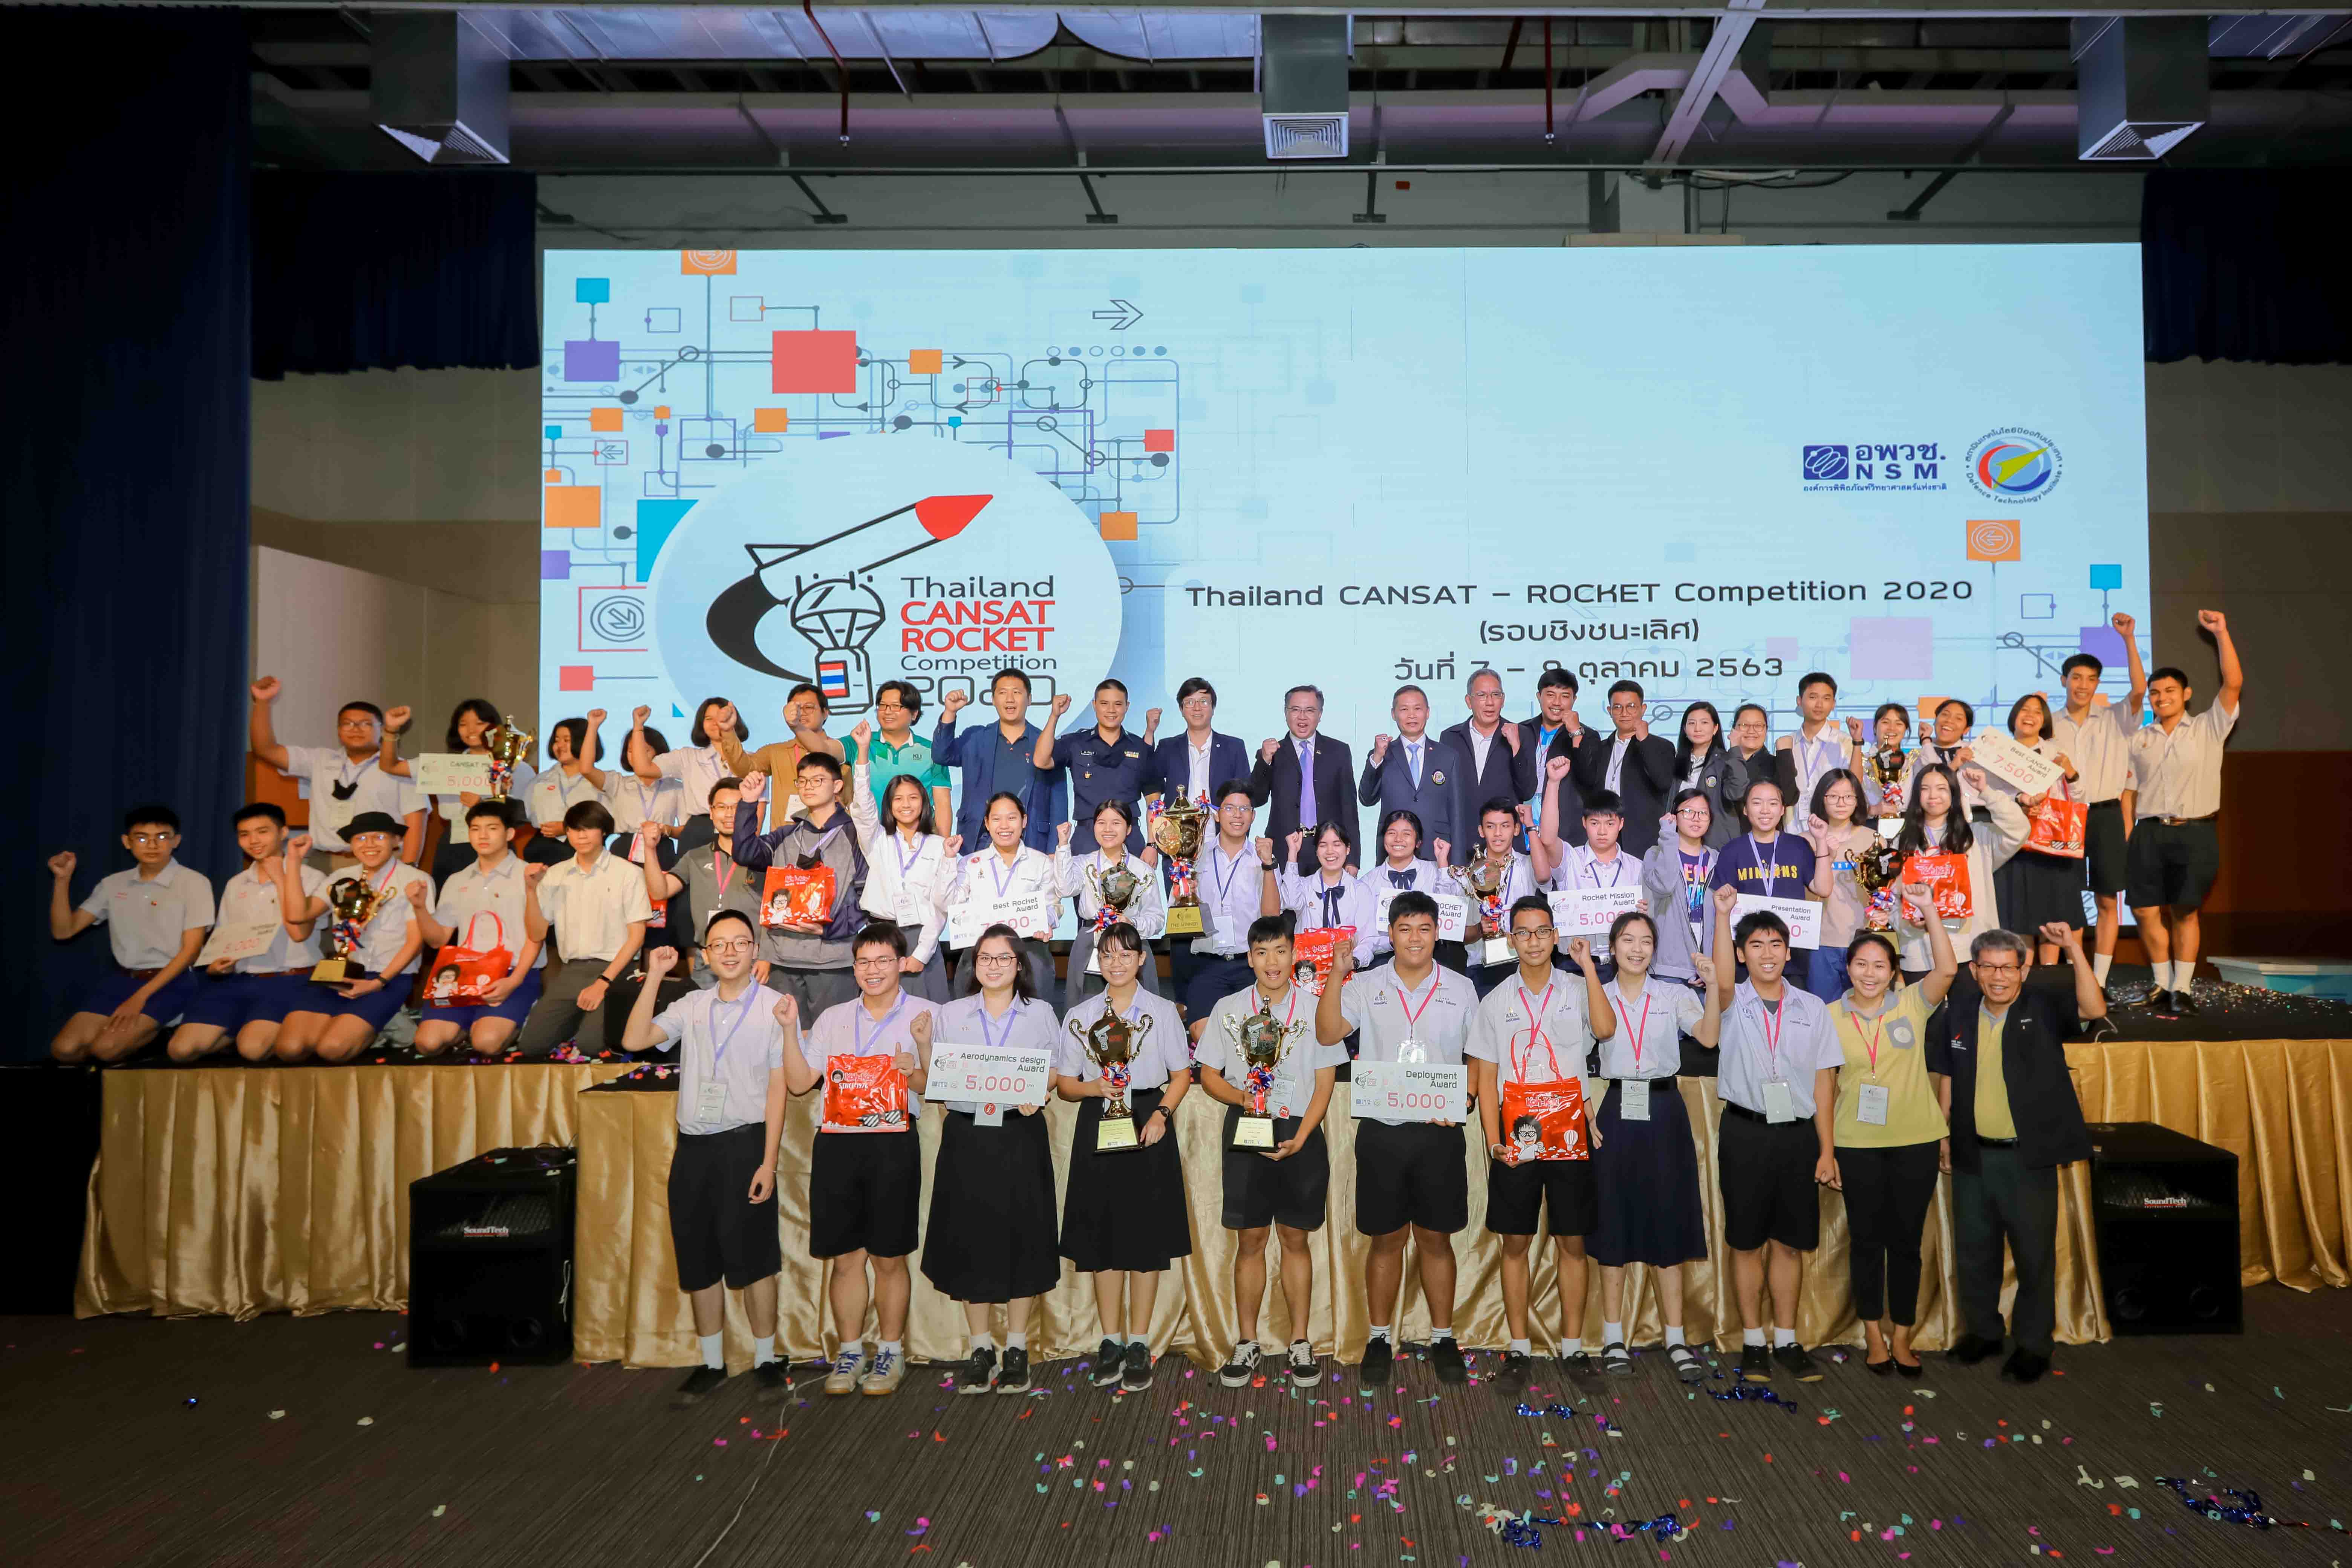 ทีมเยาวชนจาก “โรงเรียนวิทยาศาสตร์จุฬาภรณราชวิทยาลัย นครศรีธรรมราช” คว้ารางวัลชนะเลิศ CANSAT – ROCKET จากการ แข่งขัน “Thailand CANSAT – ROCKET Competition 2020”   